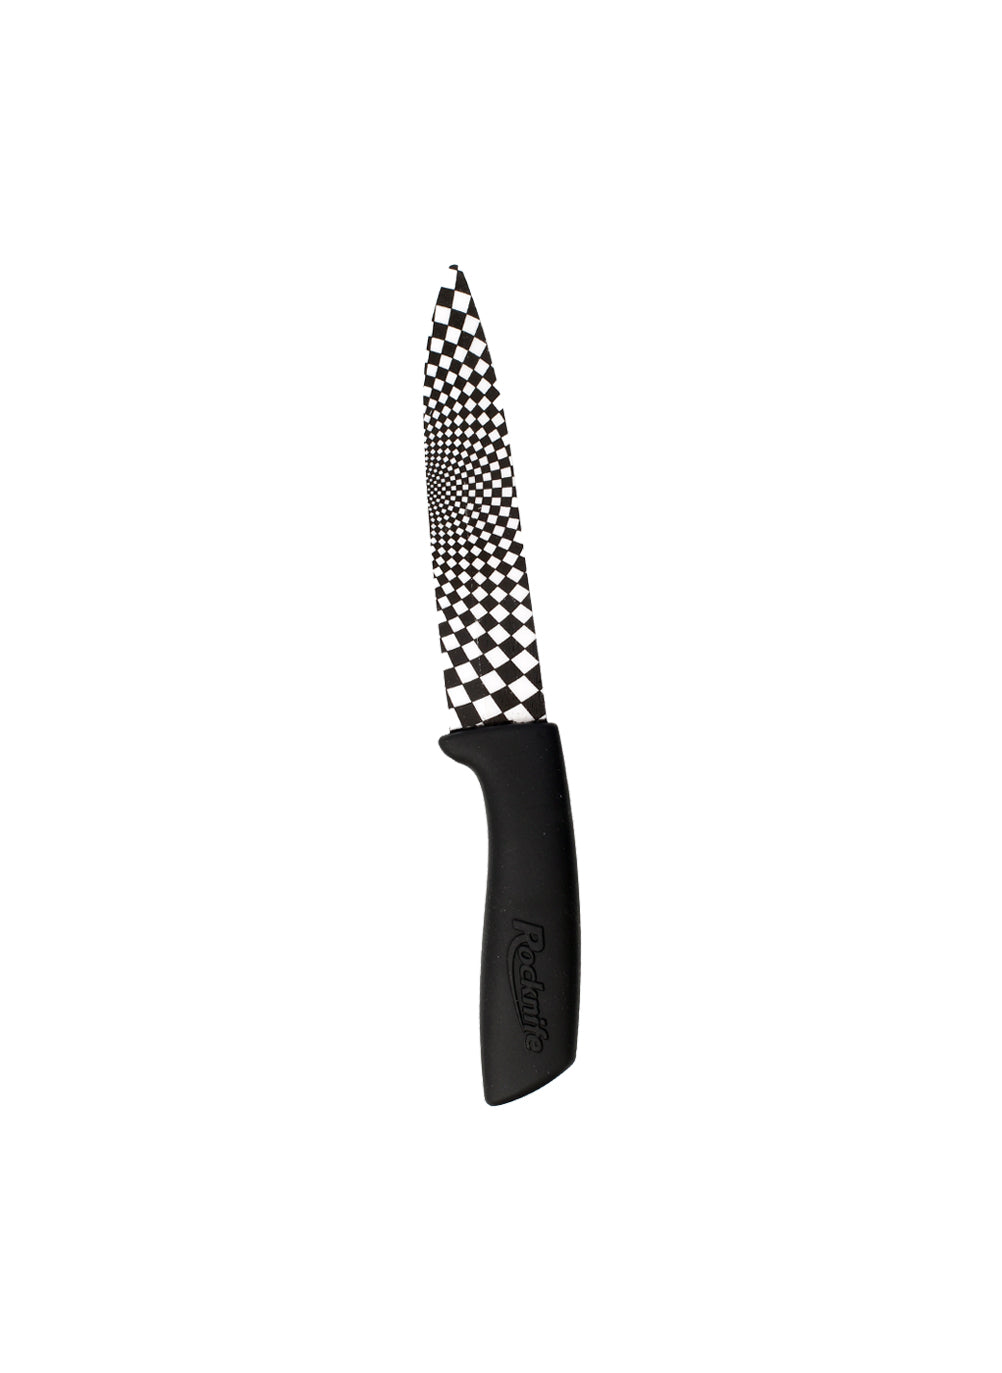 4 Inch Ceramic Kitchen Knife - Black